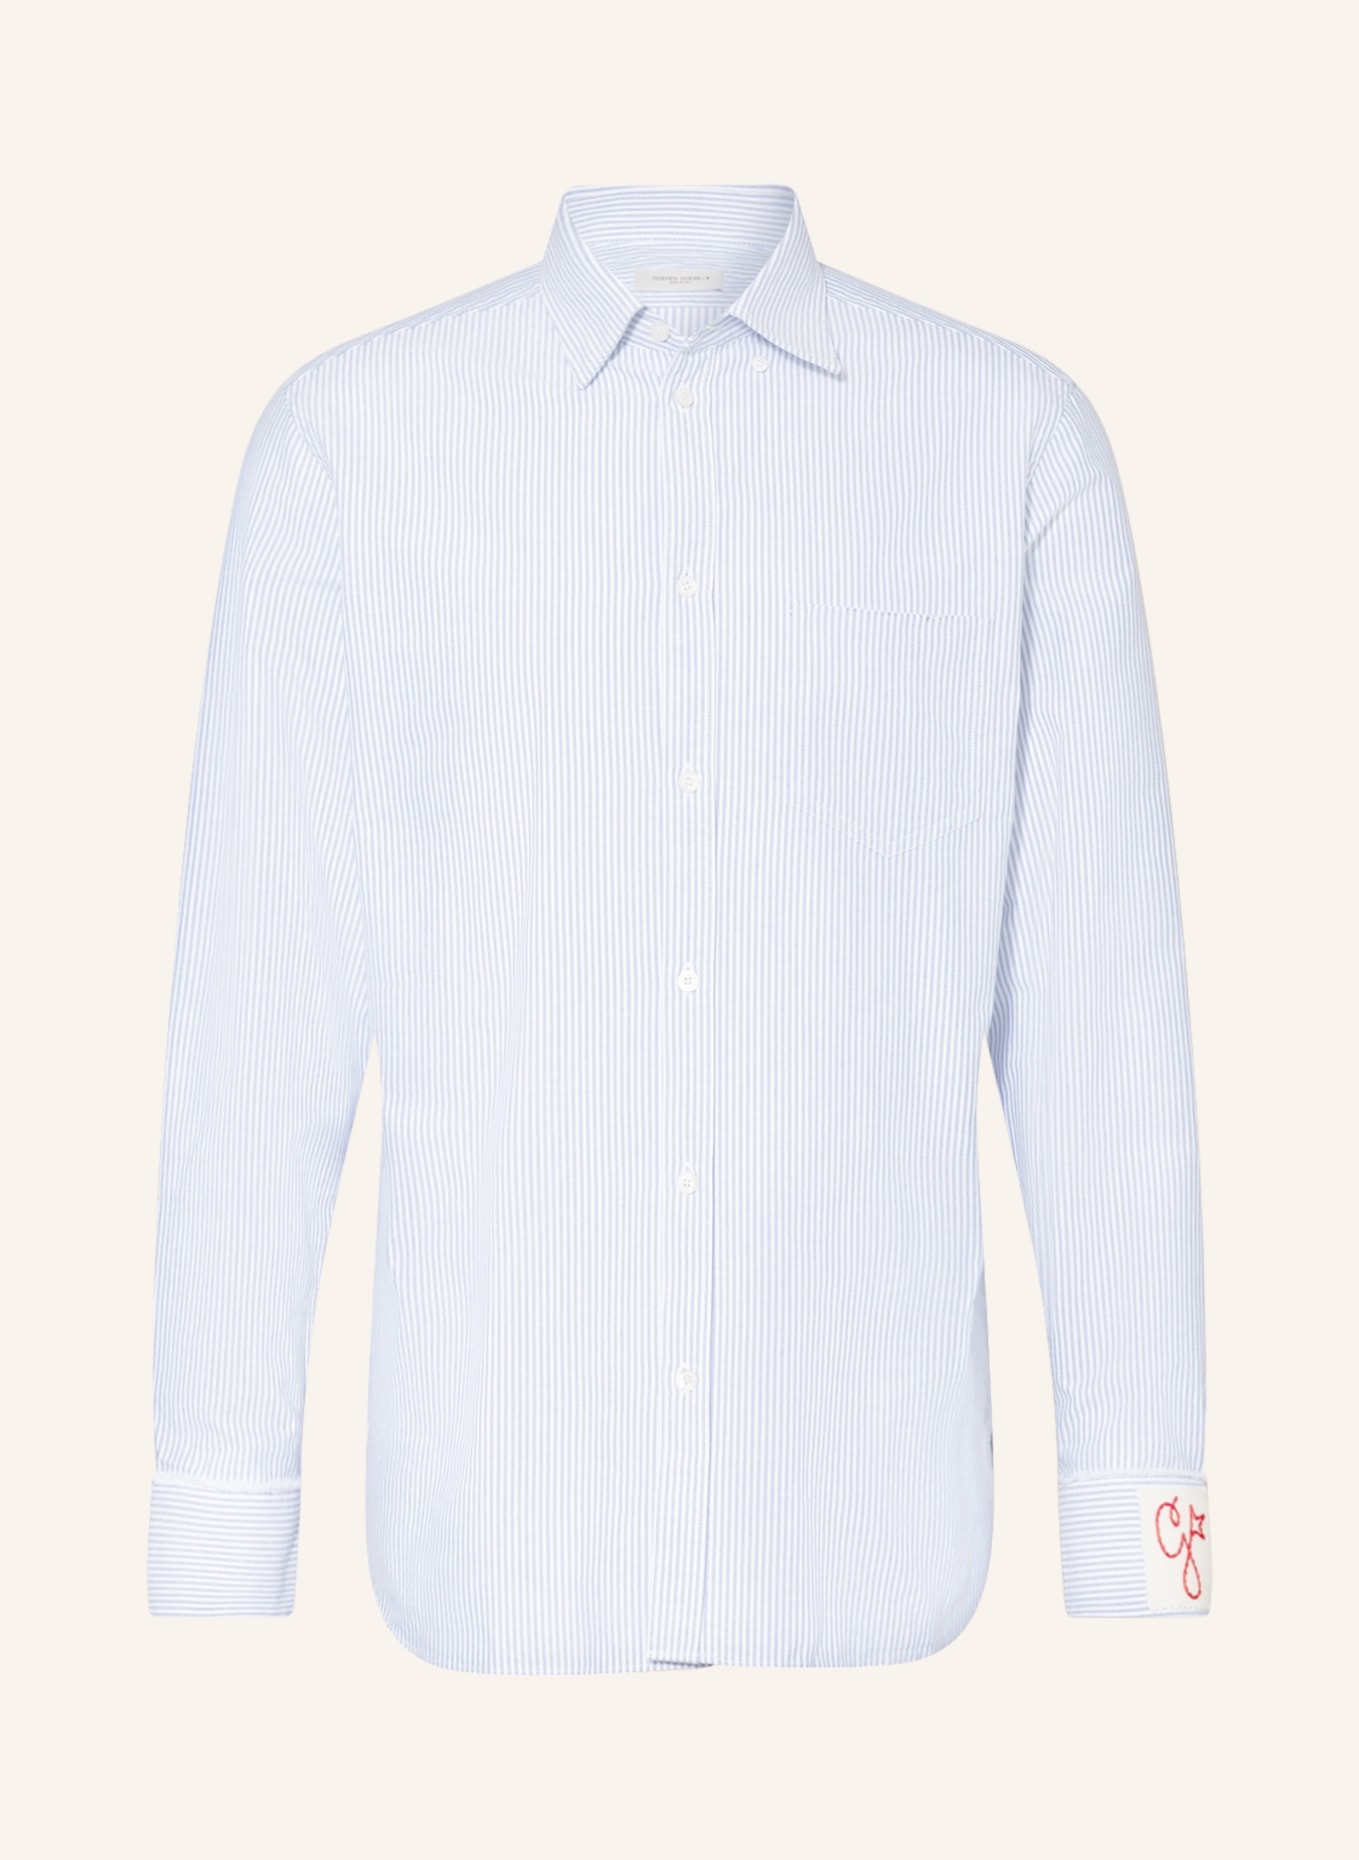 GOLDEN GOOSE Oxford shirt regular fit, Color: WHITE/ BLUE (Image 1)